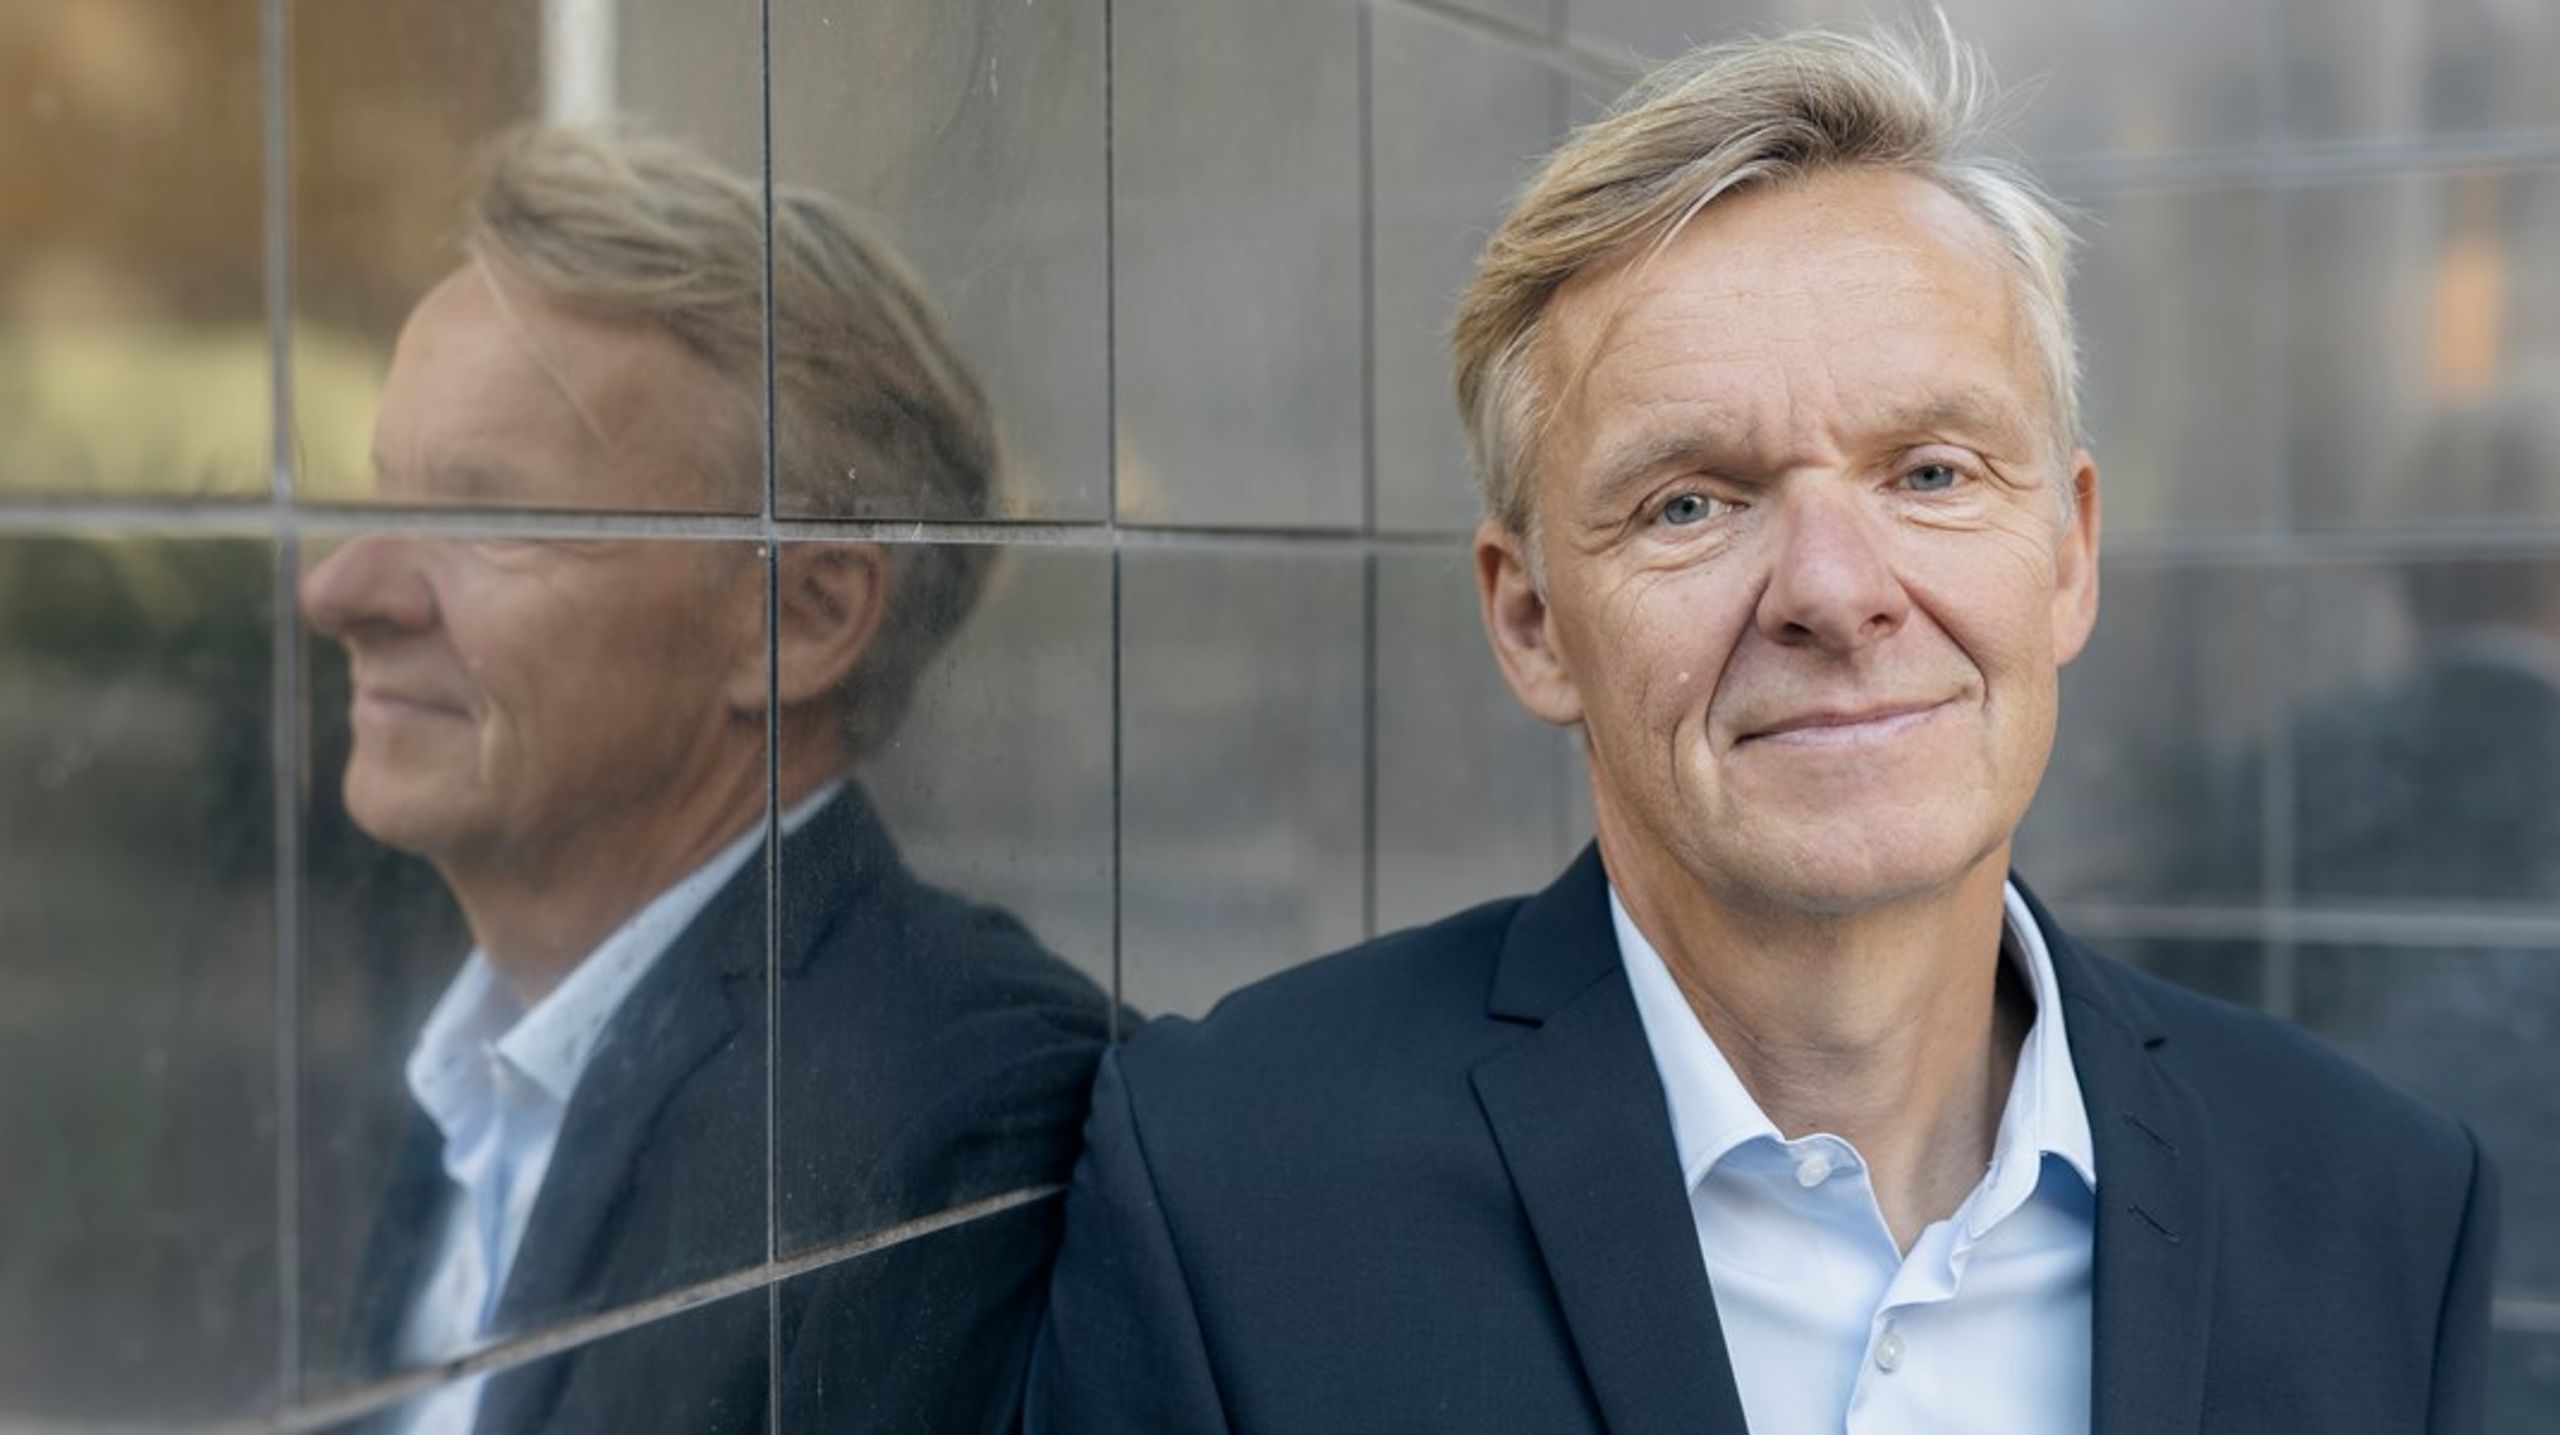 Når landbruget, for det er
ikke et hvis, pålægges en eller anden form for CO2-afgift, så står Inger Støjbergs Danmarksdemokrater klar til at modtage de mange
vrede Venstre-vælgere, skriver Poul Madsen.